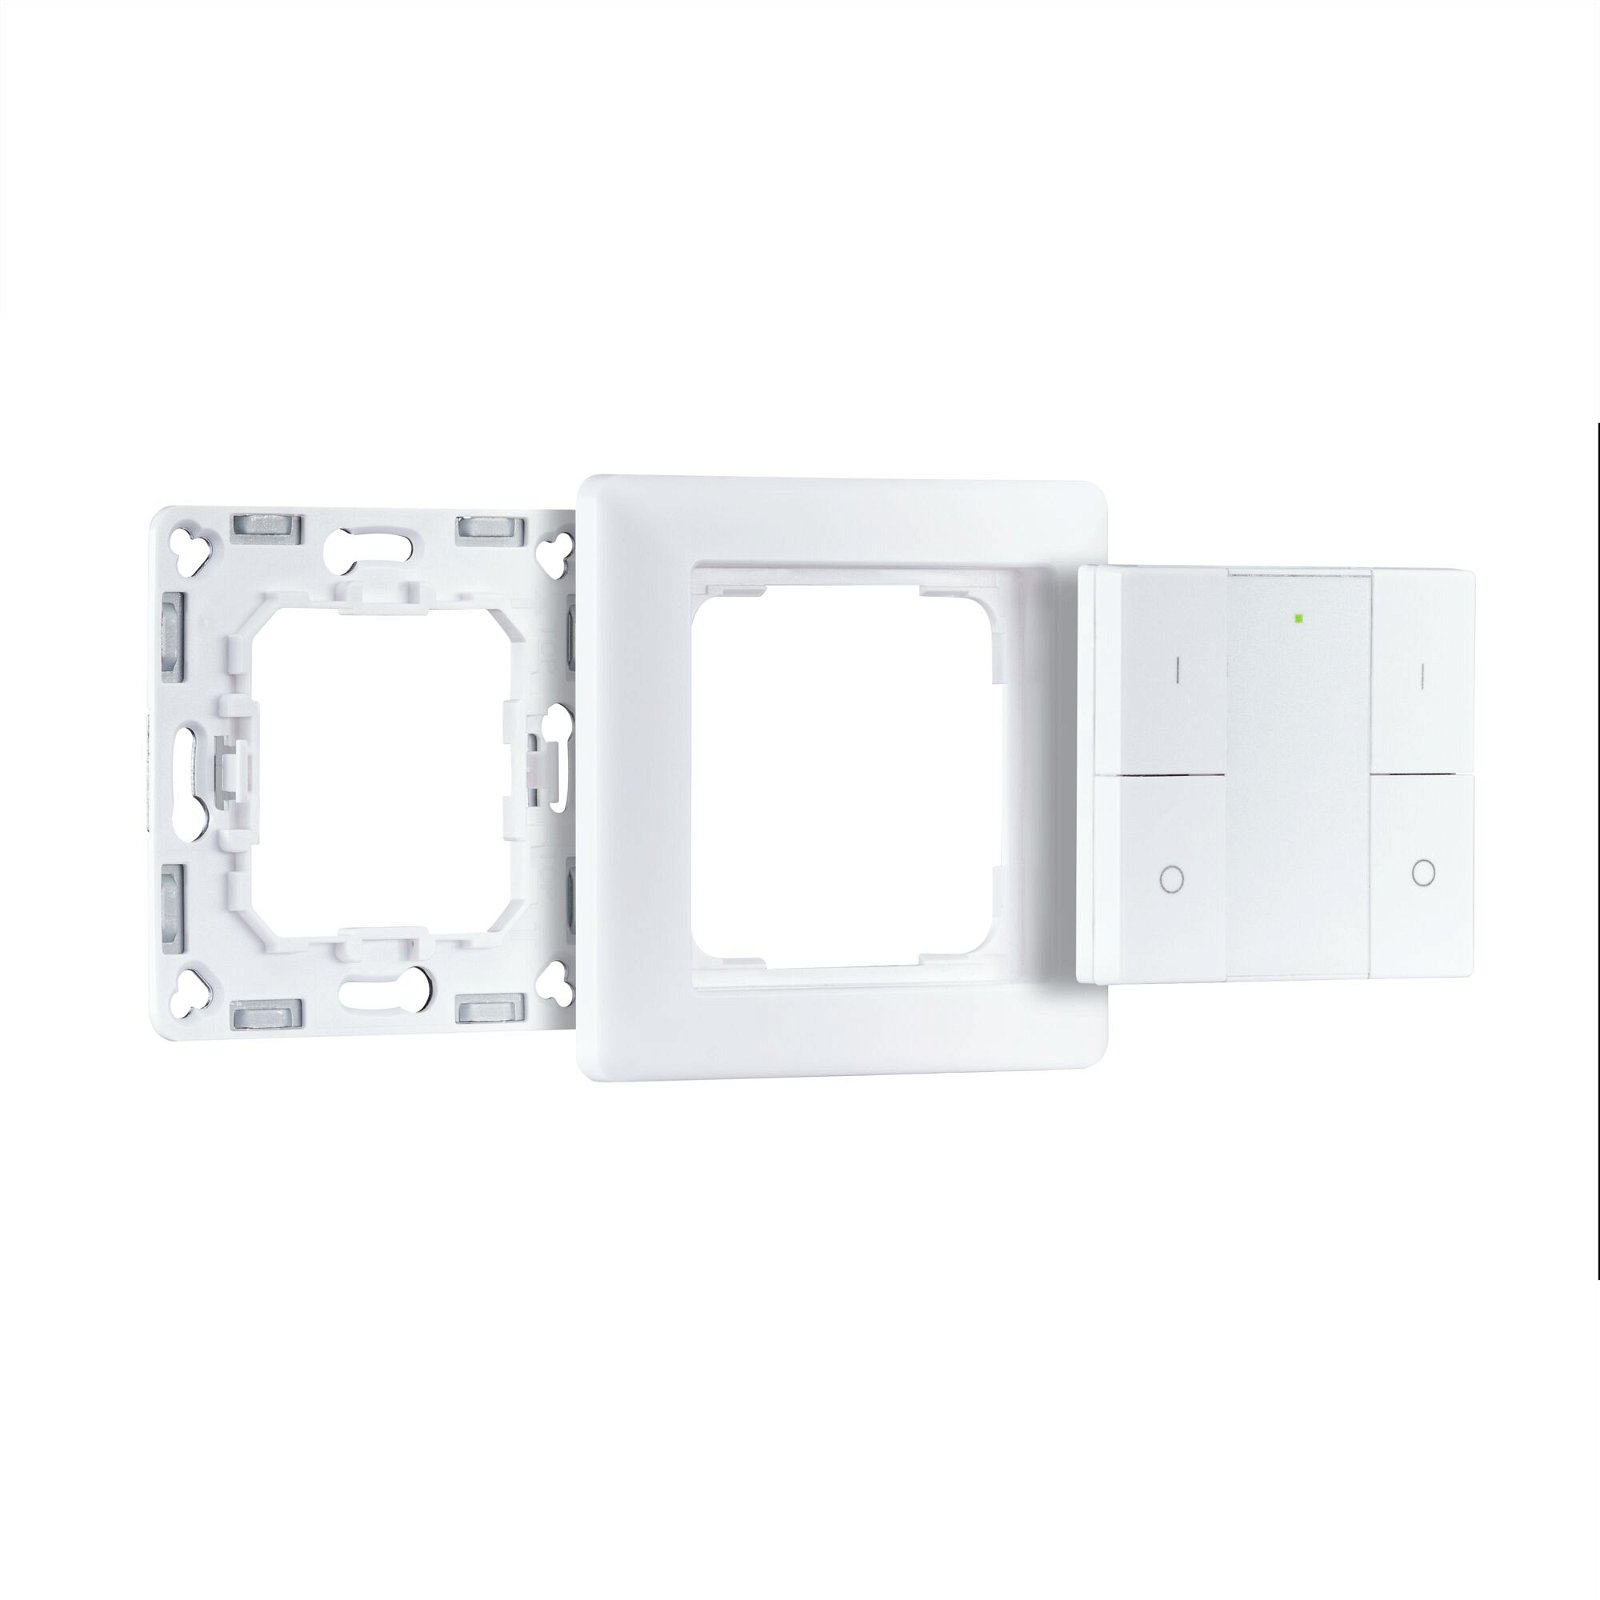 Kits de démarrage Smart Home smik Gateway avec bouton-poussoir mural + luminaire LED encastré Nova Plus Coin Set de base orientable Tunable White